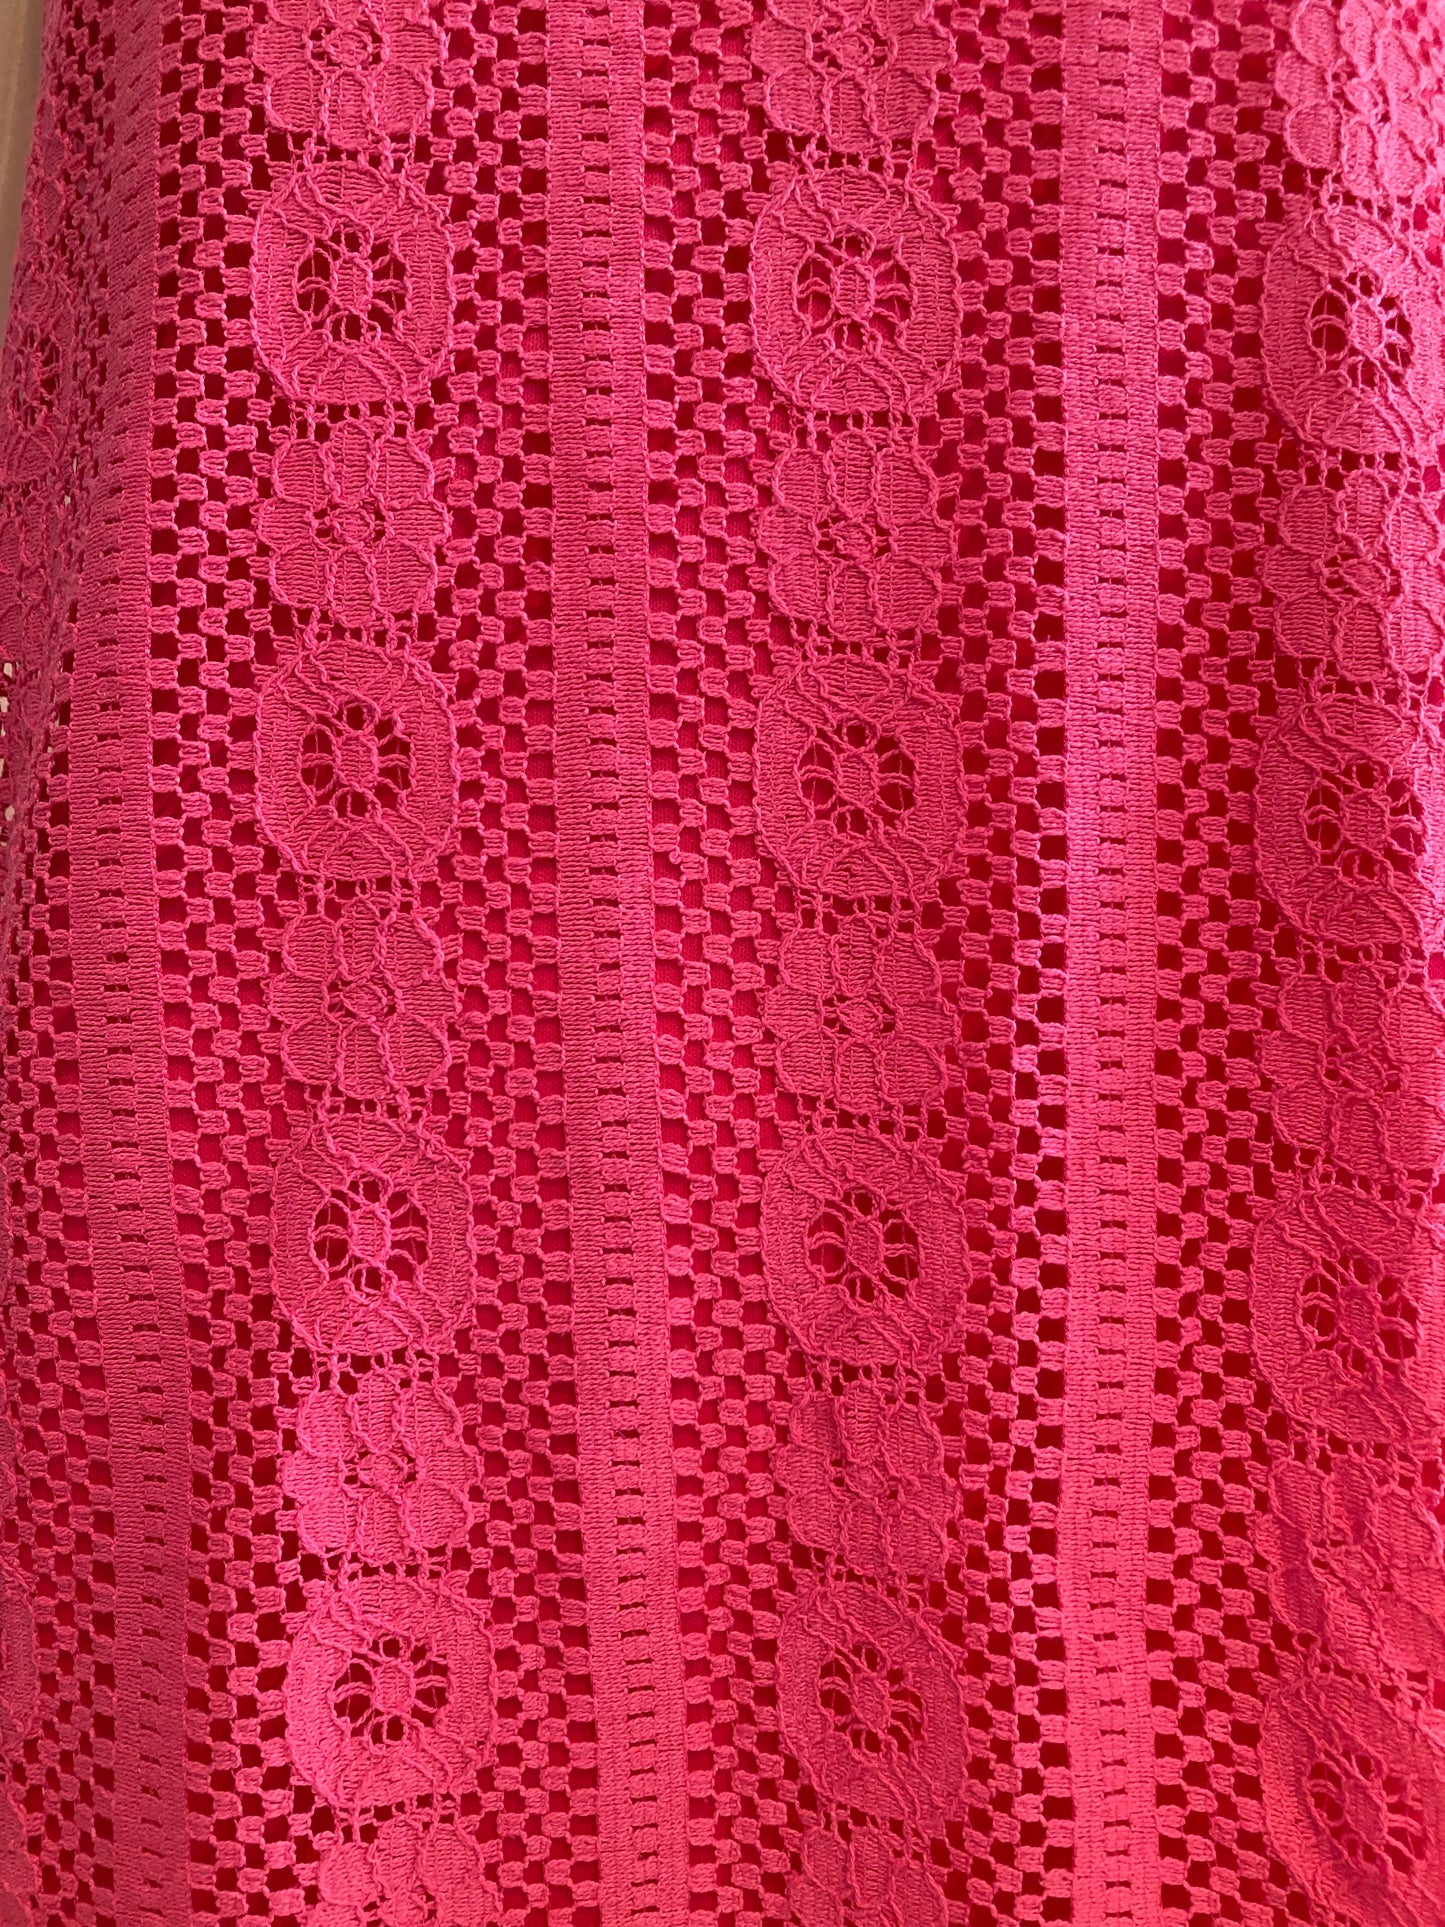 Lace dress pink